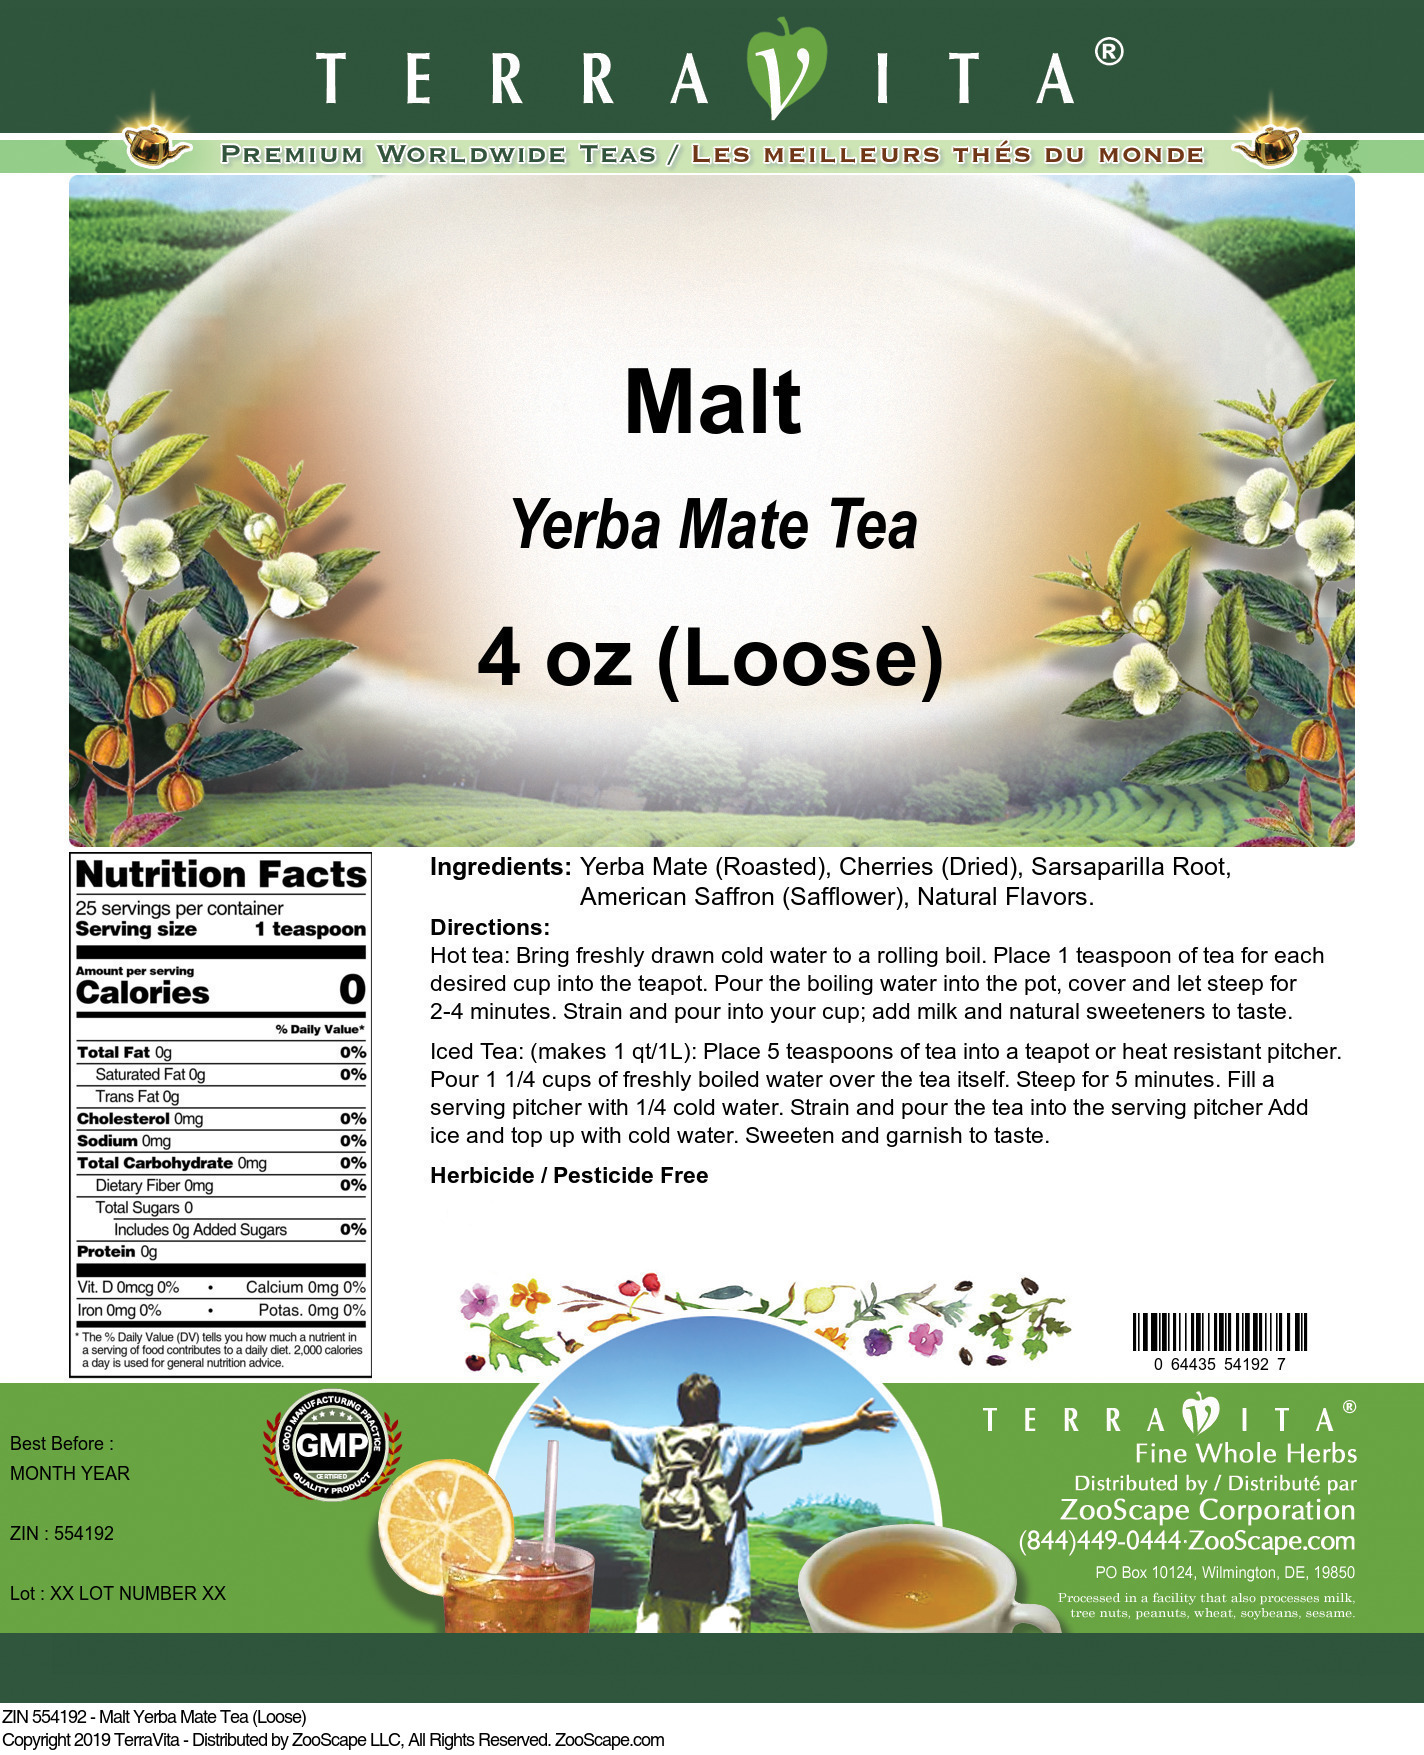 Malt Yerba Mate Tea (Loose) - Label